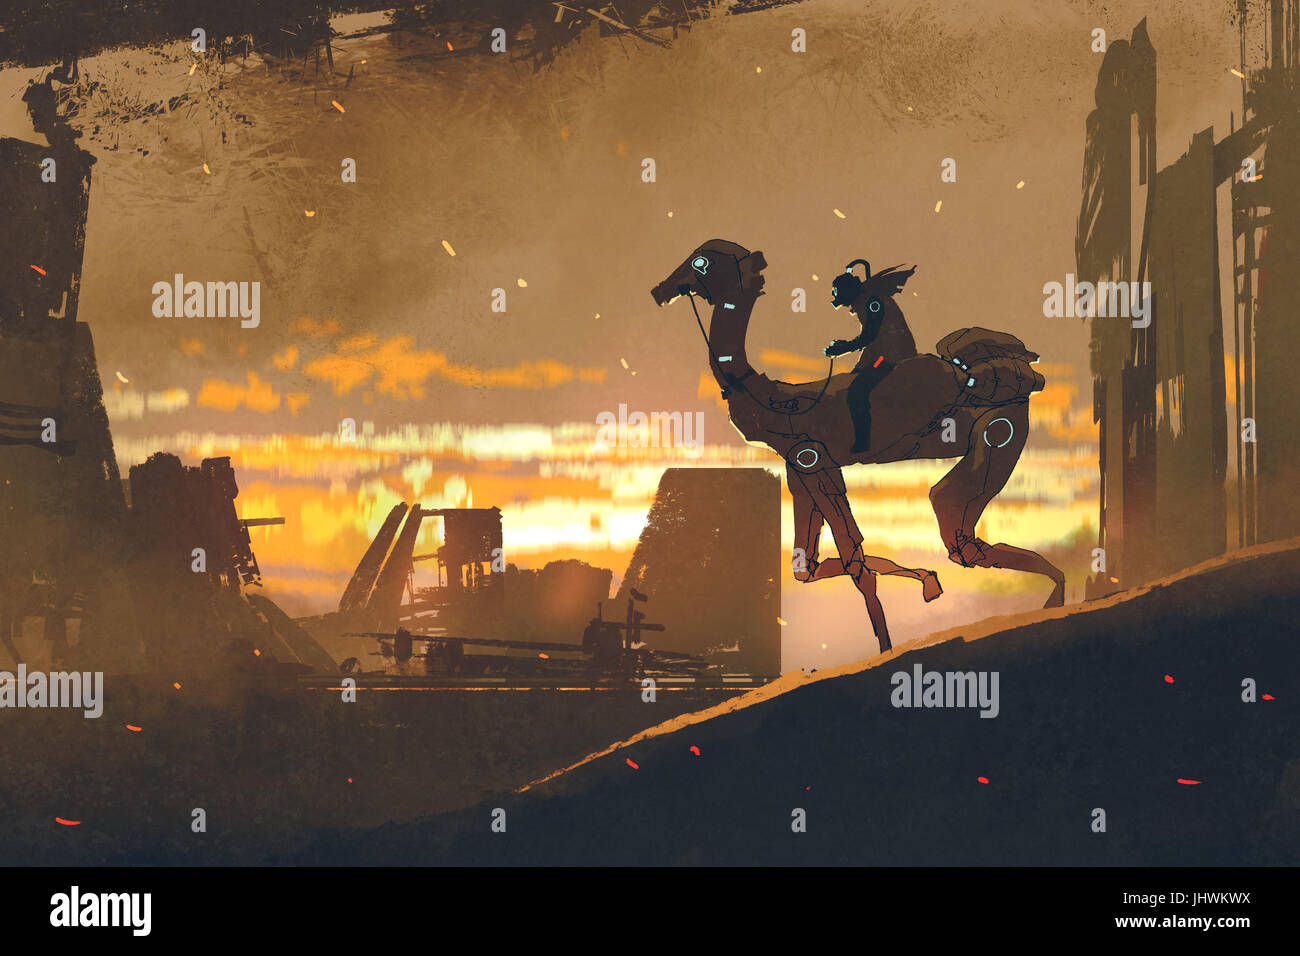 Sci-Fi-Szene des Menschen auf futuristische Kamel laufen in Apokalypse Stadt bei Sonnenuntergang, digitale Kunststil, Illustration, Malerei Stockfoto